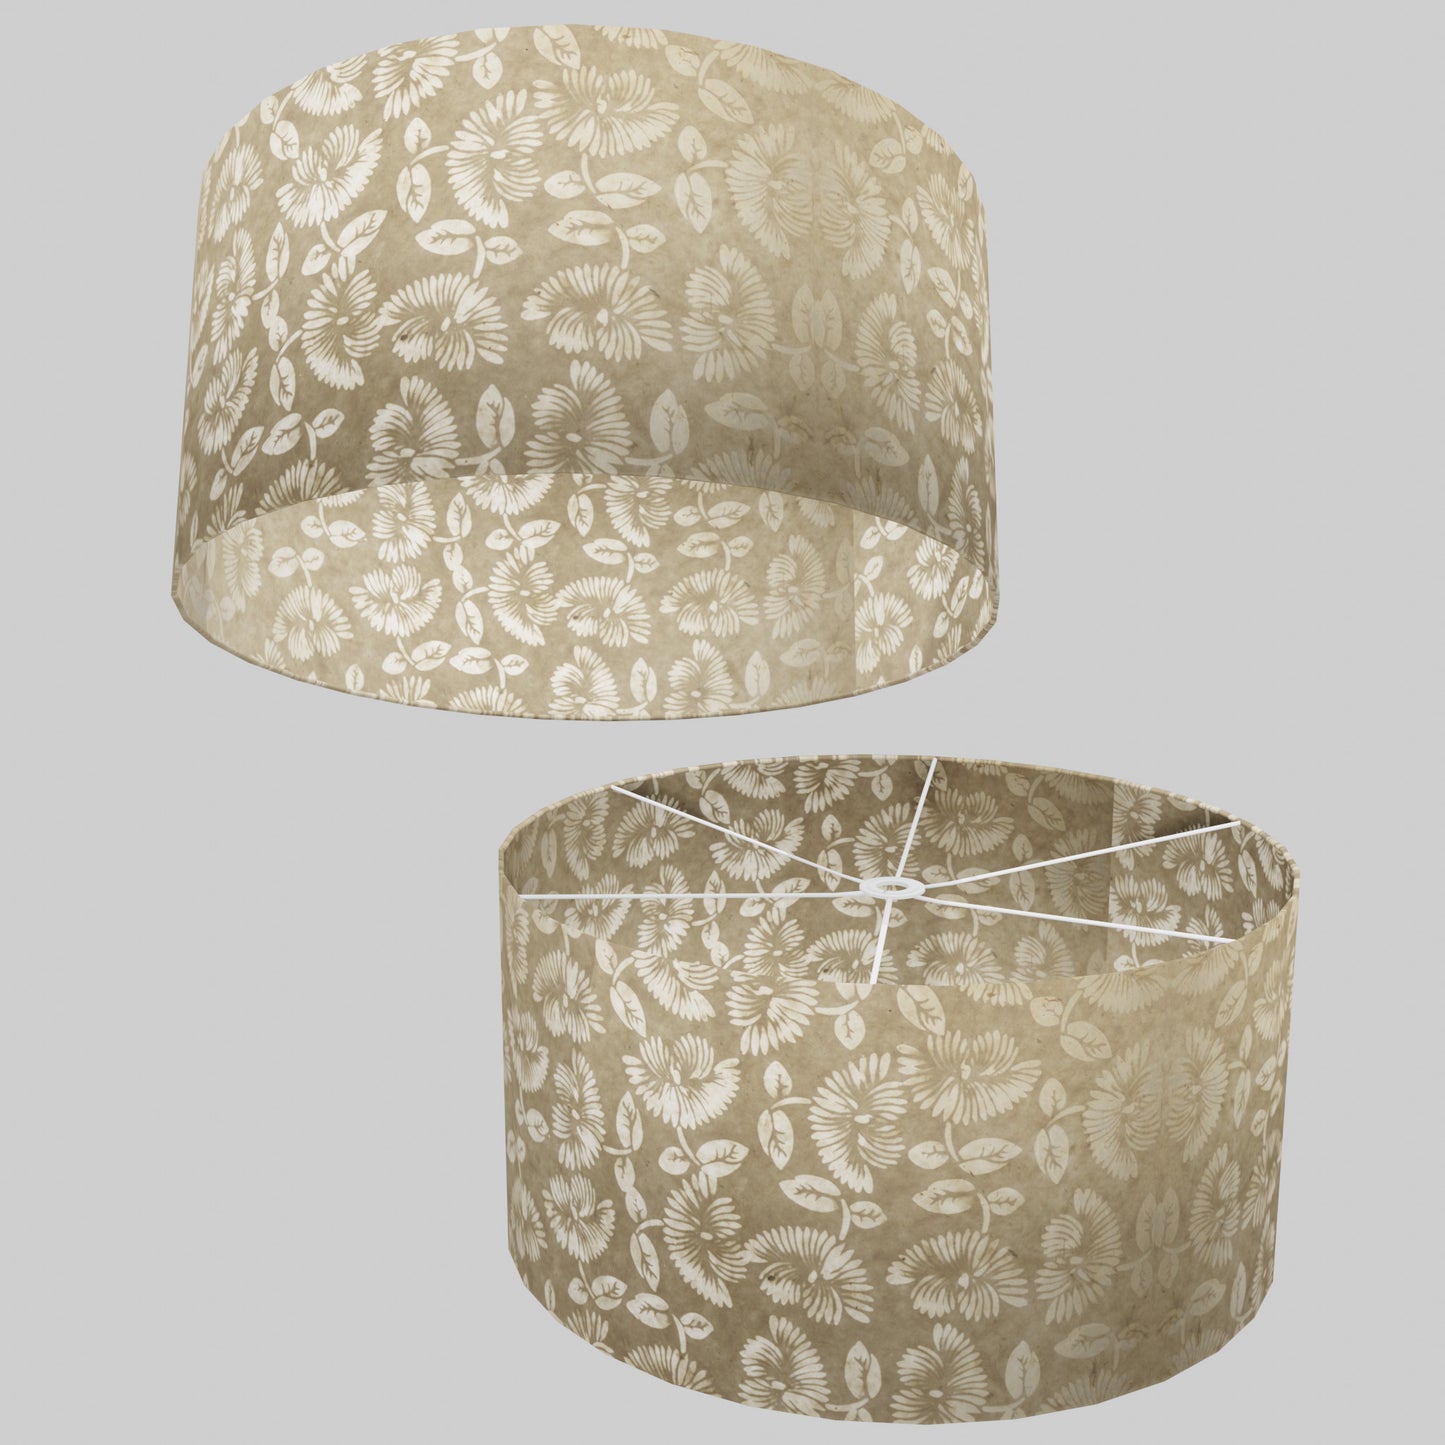 Drum Lamp Shade - P09 - Batik Peony on Natural, 60cm(d) x 30cm(h)